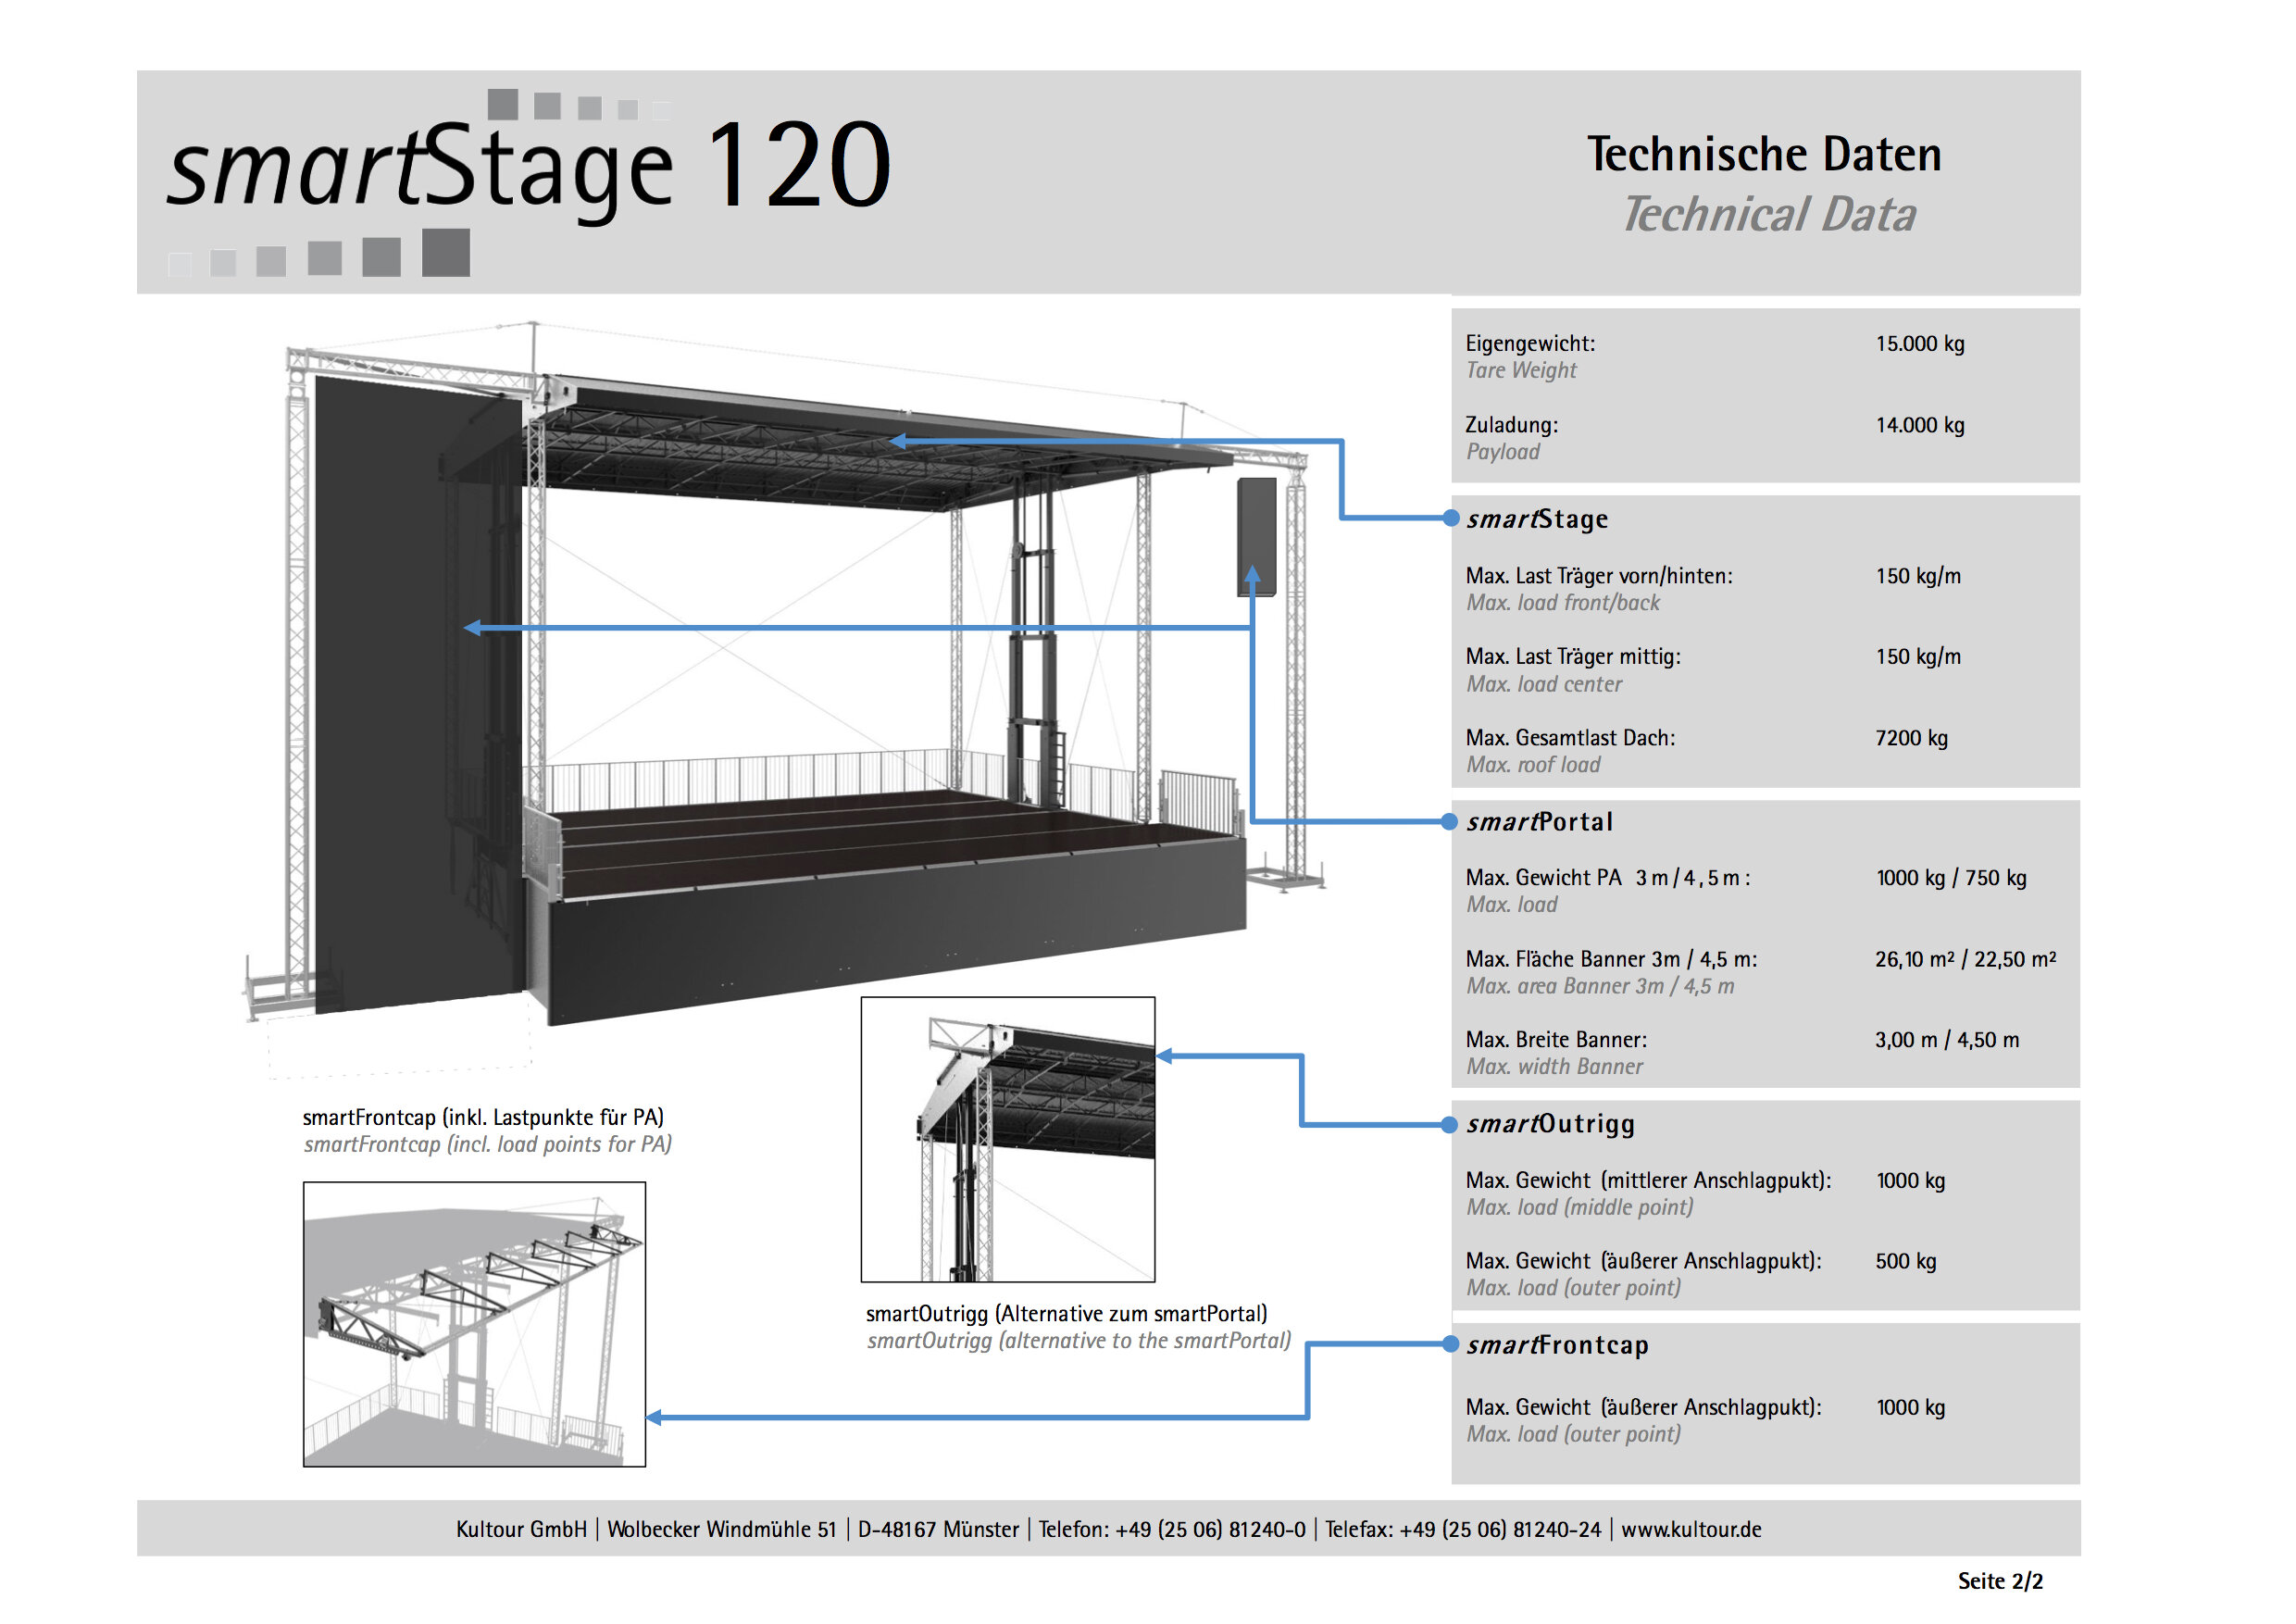 smartStage 120 - Technische Daten 2:2.jpg